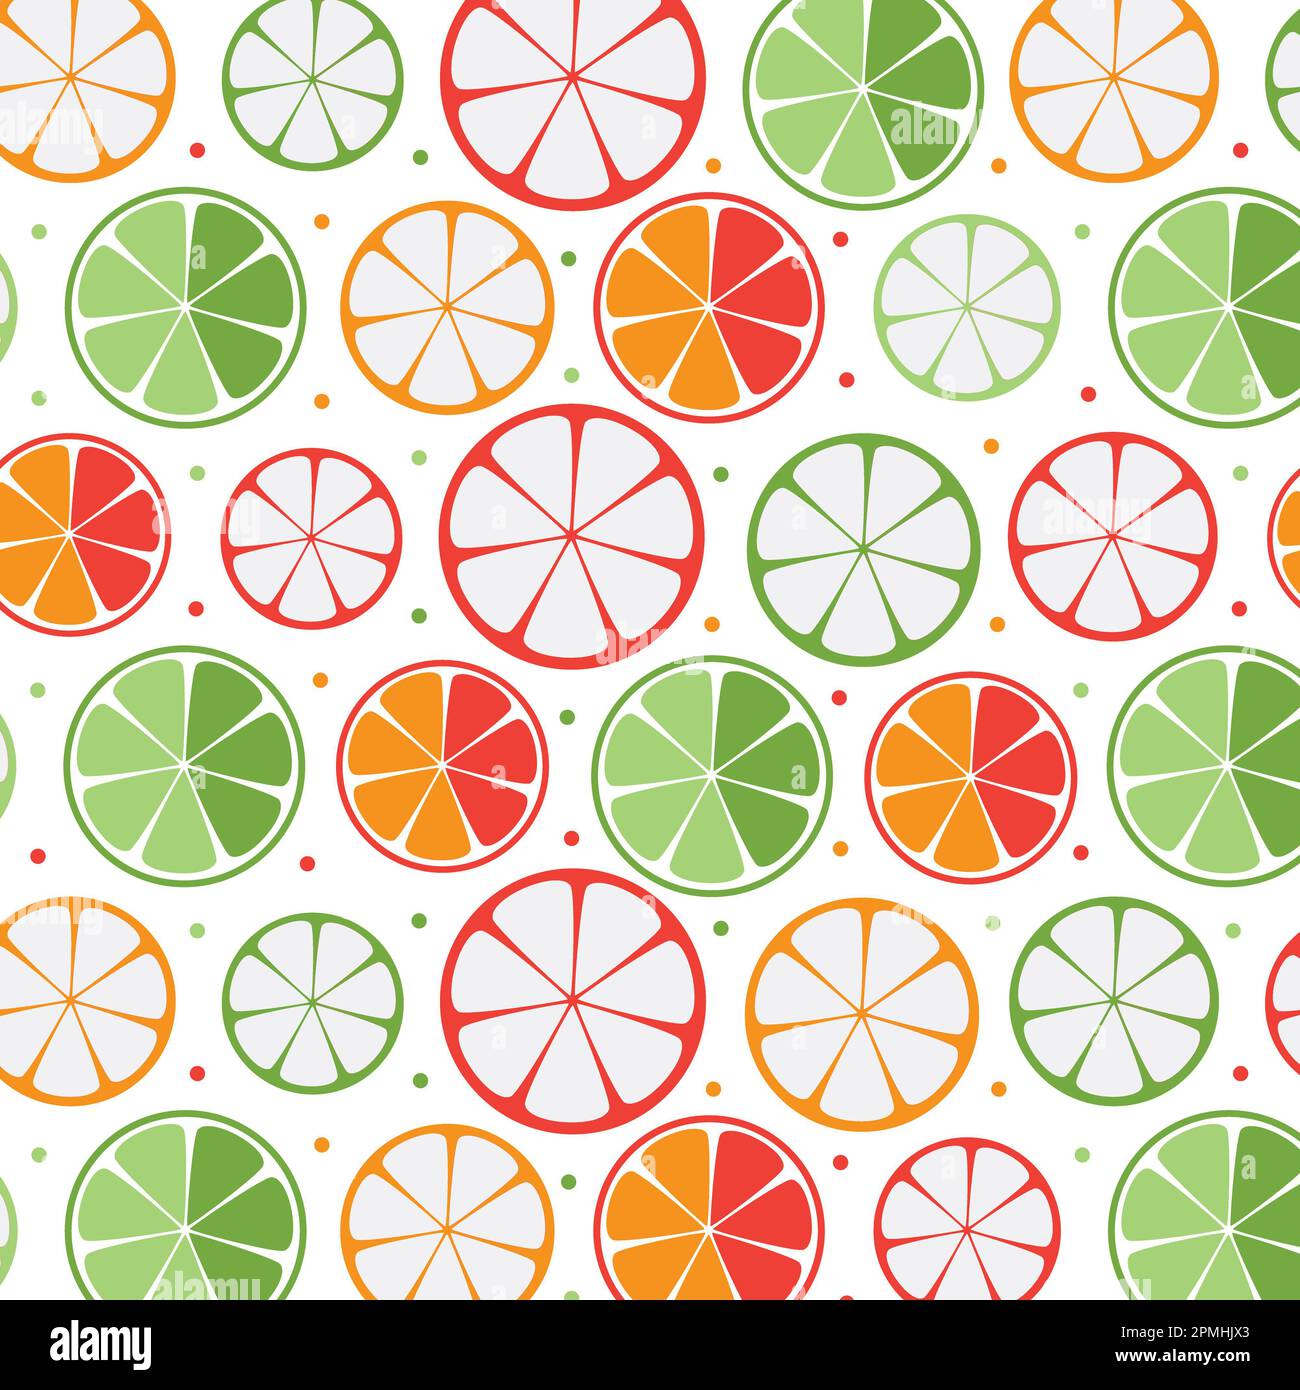 Zitrusmuster, sommerliches Zitrusmuster, Zitrusfruchtmuster, abstraktes Zitrusfruchtmuster in Orange und Grün Stockfoto